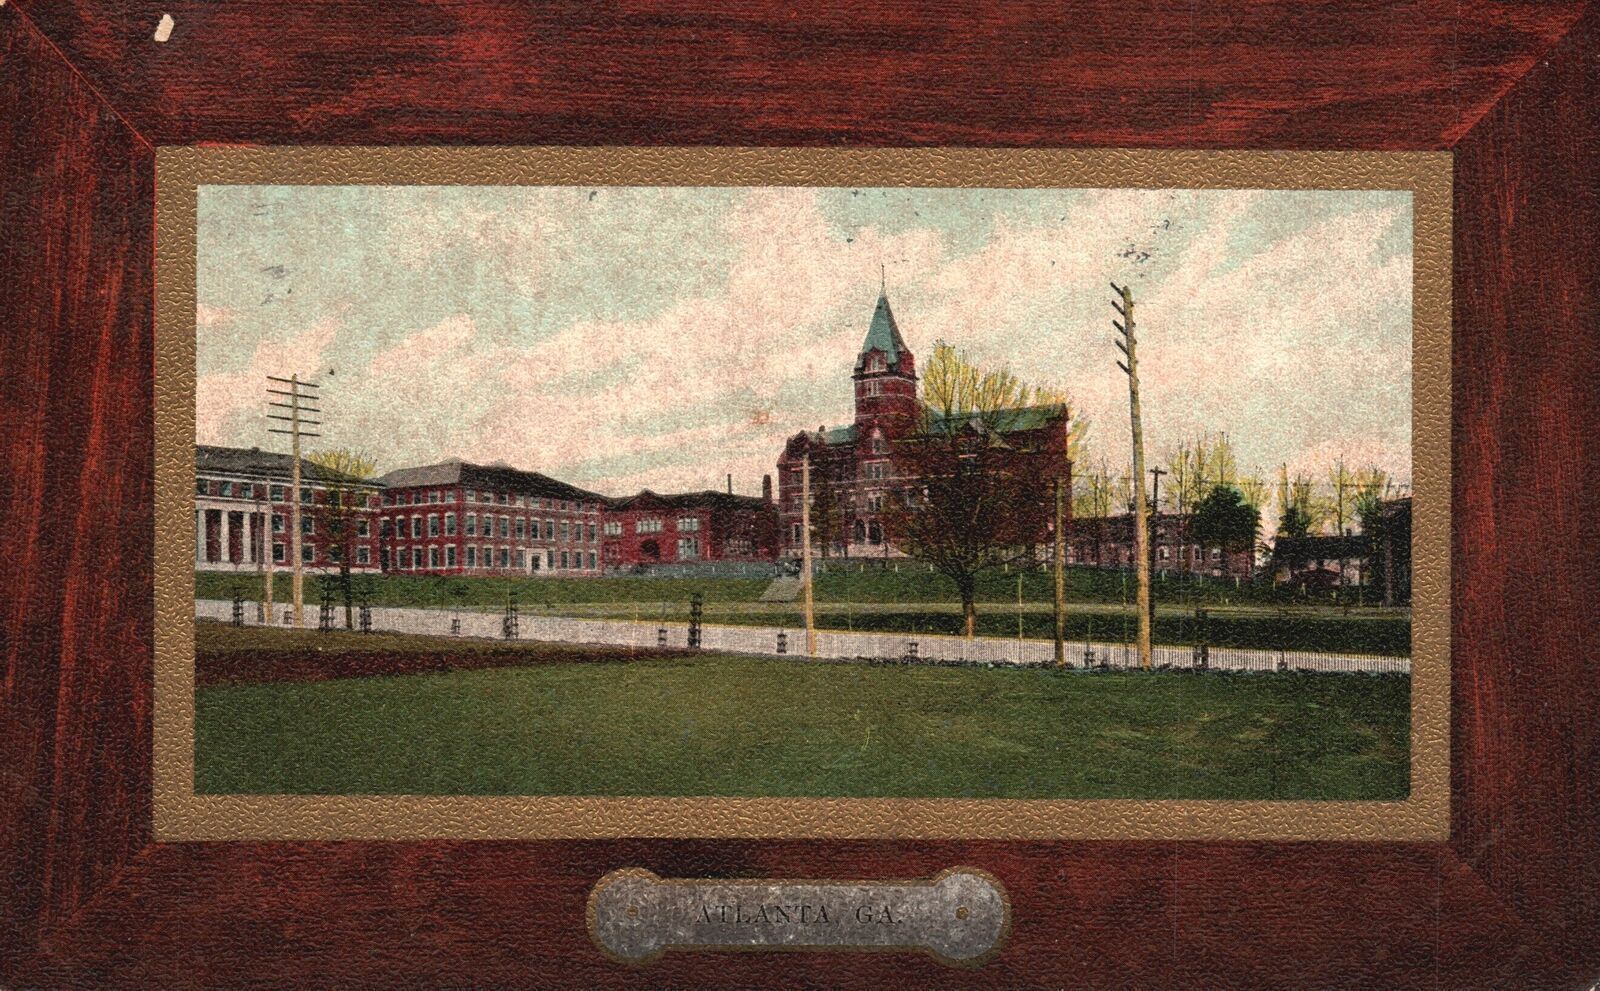 Vintage Postcard 1912 Georgia School of Technology Campus Building Atlanta GA